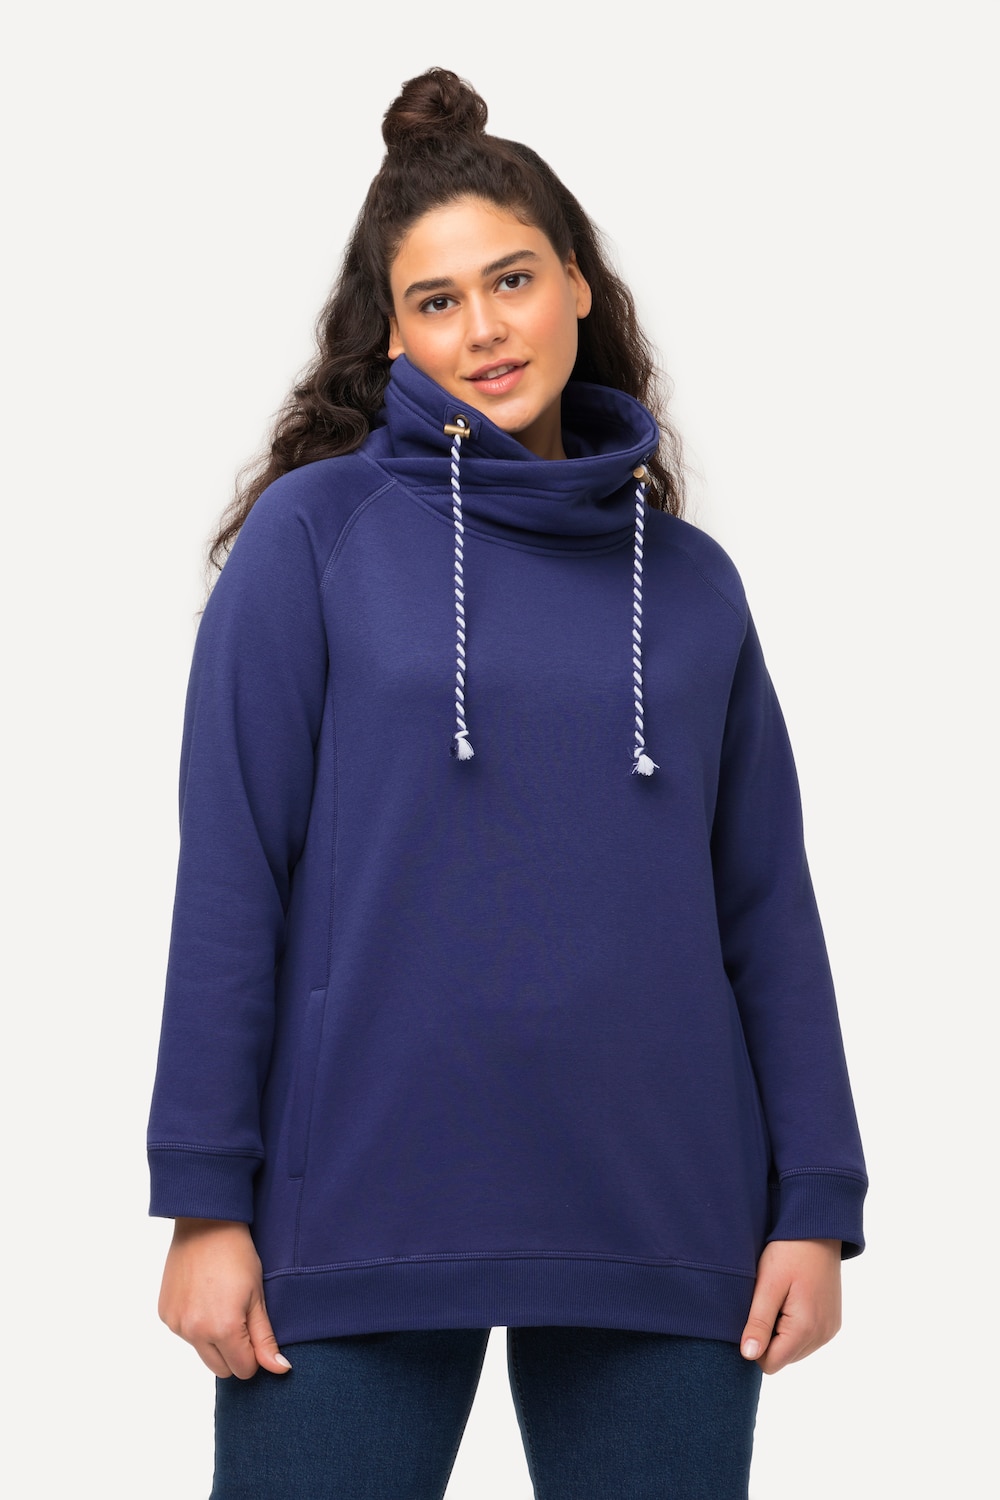 Grote Maten sweatshirt, Dames, blauw, Maat: 54/56, Katoen/Polyester, Ulla Popken